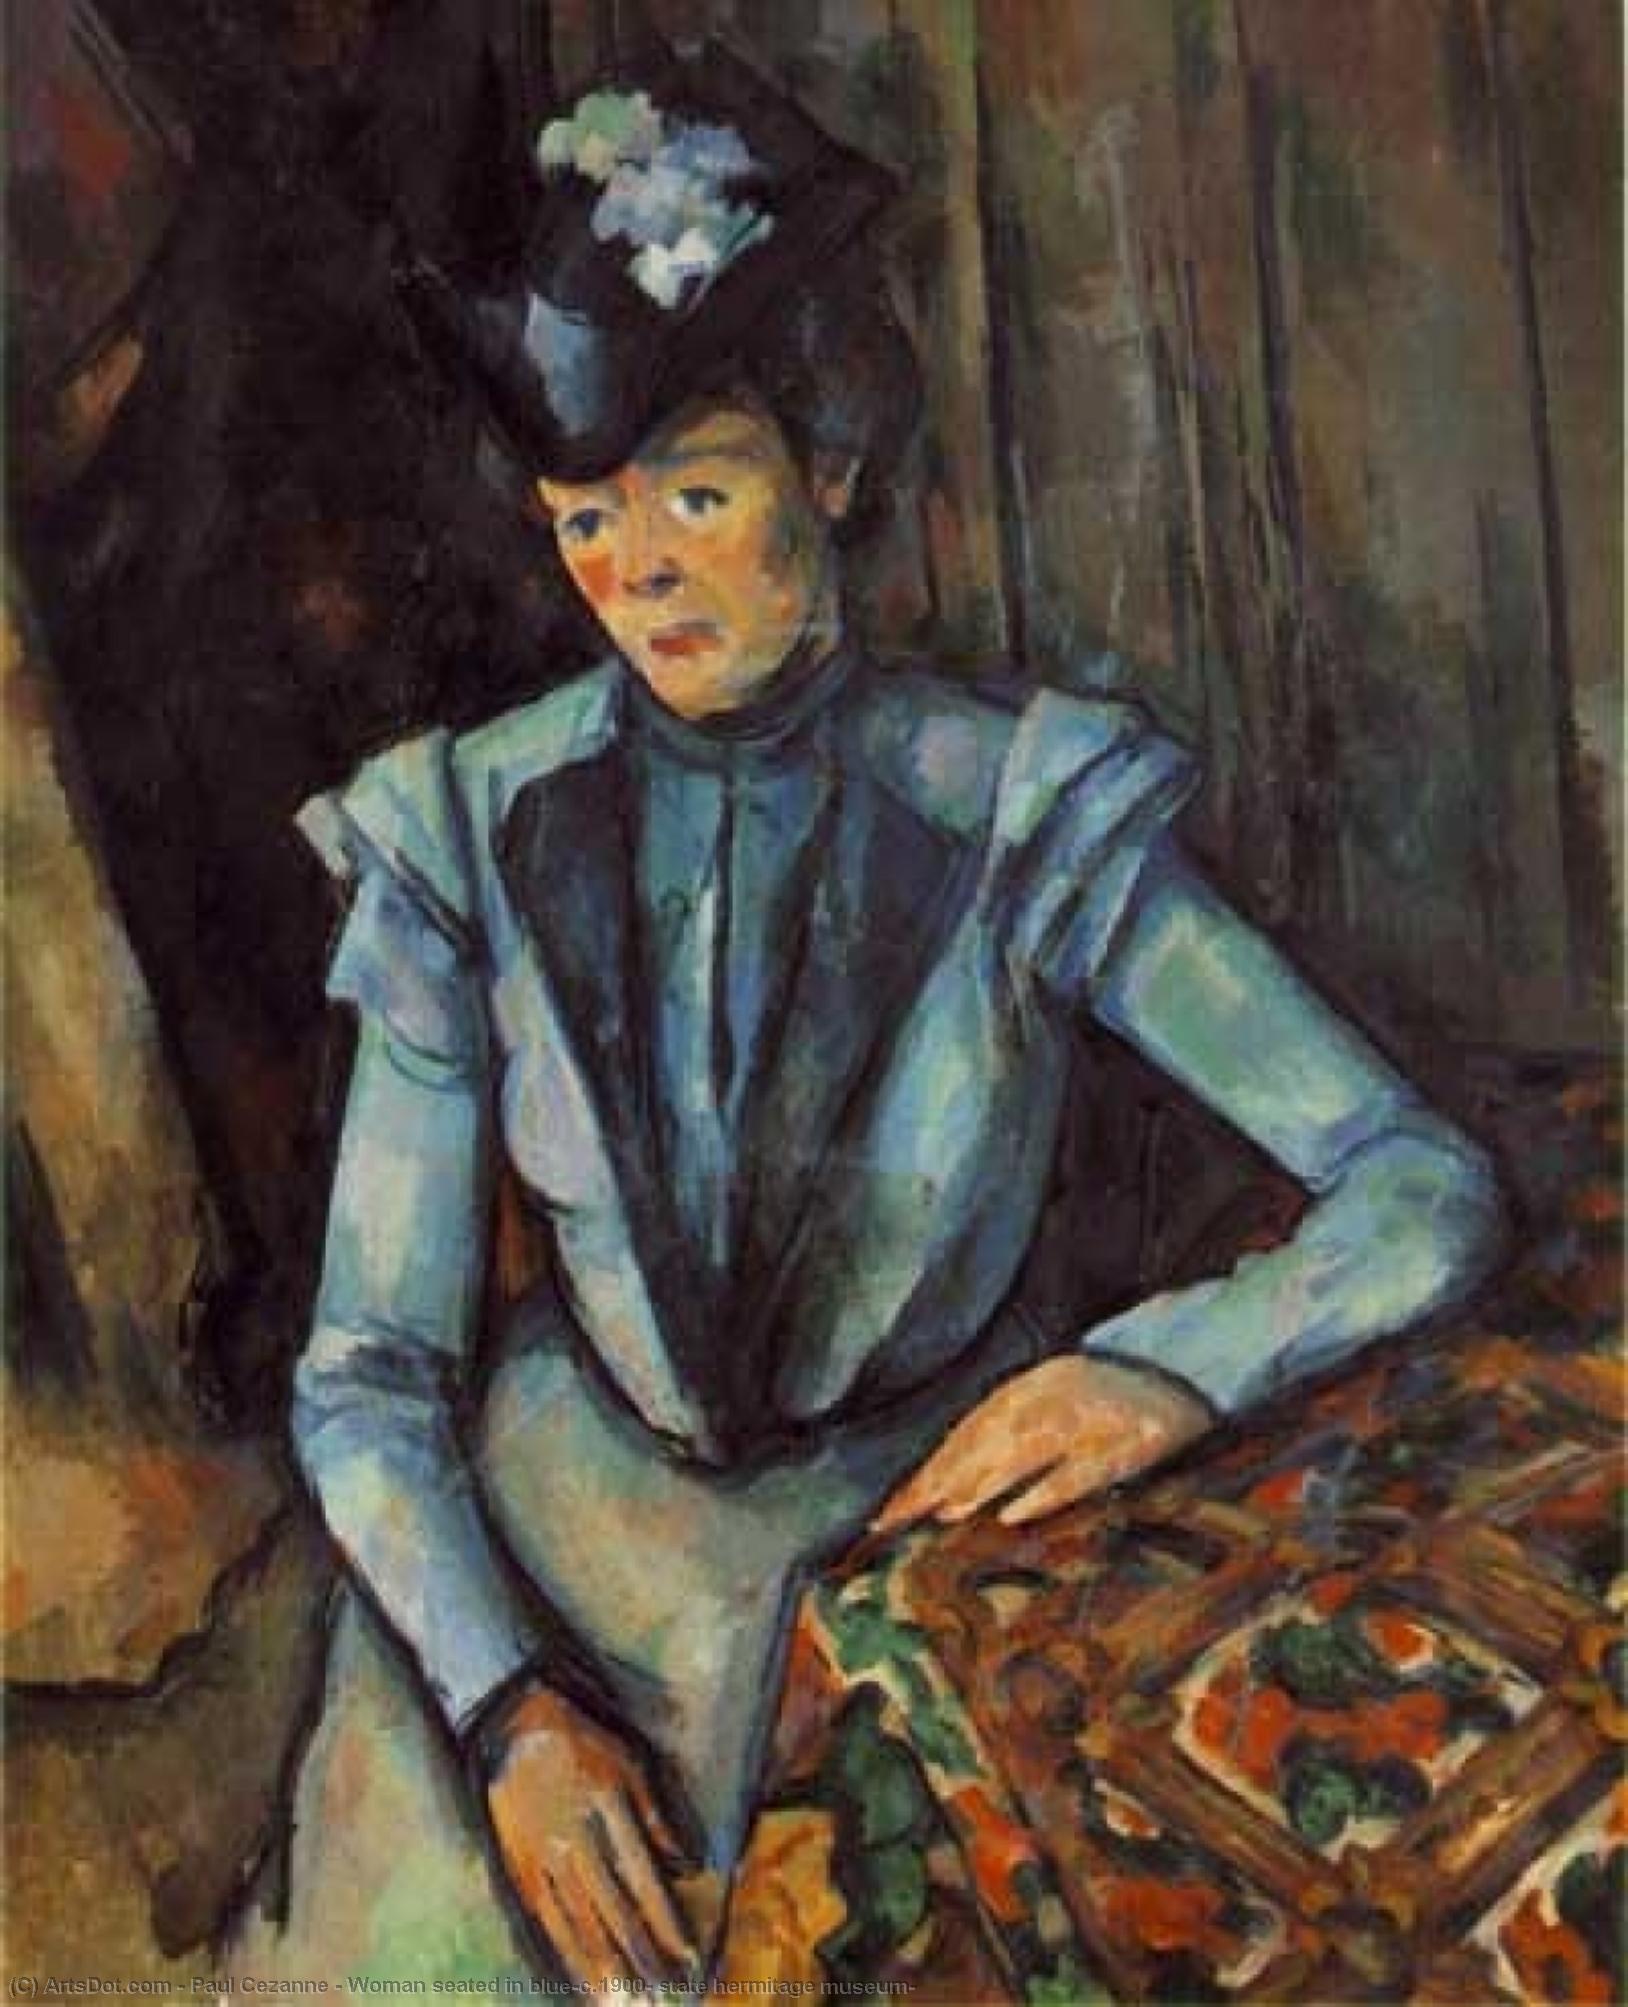 Wikoo.org - موسوعة الفنون الجميلة - اللوحة، العمل الفني Paul Cezanne - Woman seated in blue,c.1900, state hermitage museum,